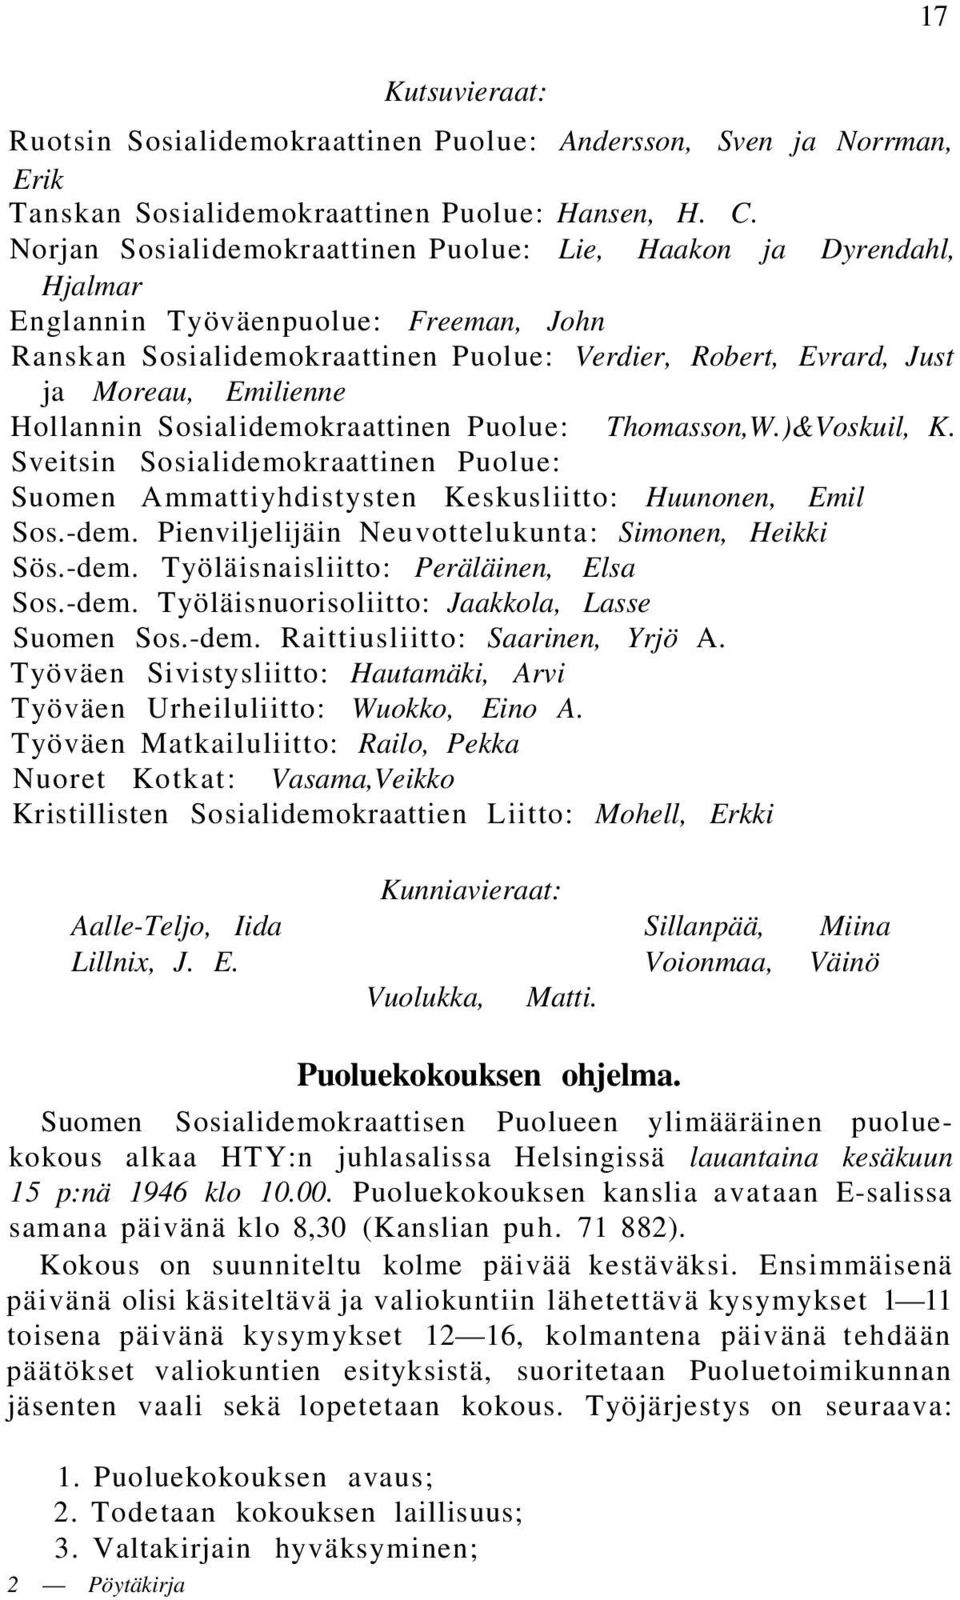 Hollannin Sosialidemokraattinen Puolue: Thomasson,W.)&Voskuil, K. Sveitsin Sosialidemokraattinen Puolue: Suomen Ammattiyhdistysten Keskusliitto: Huunonen, Emil Sos.-dem.